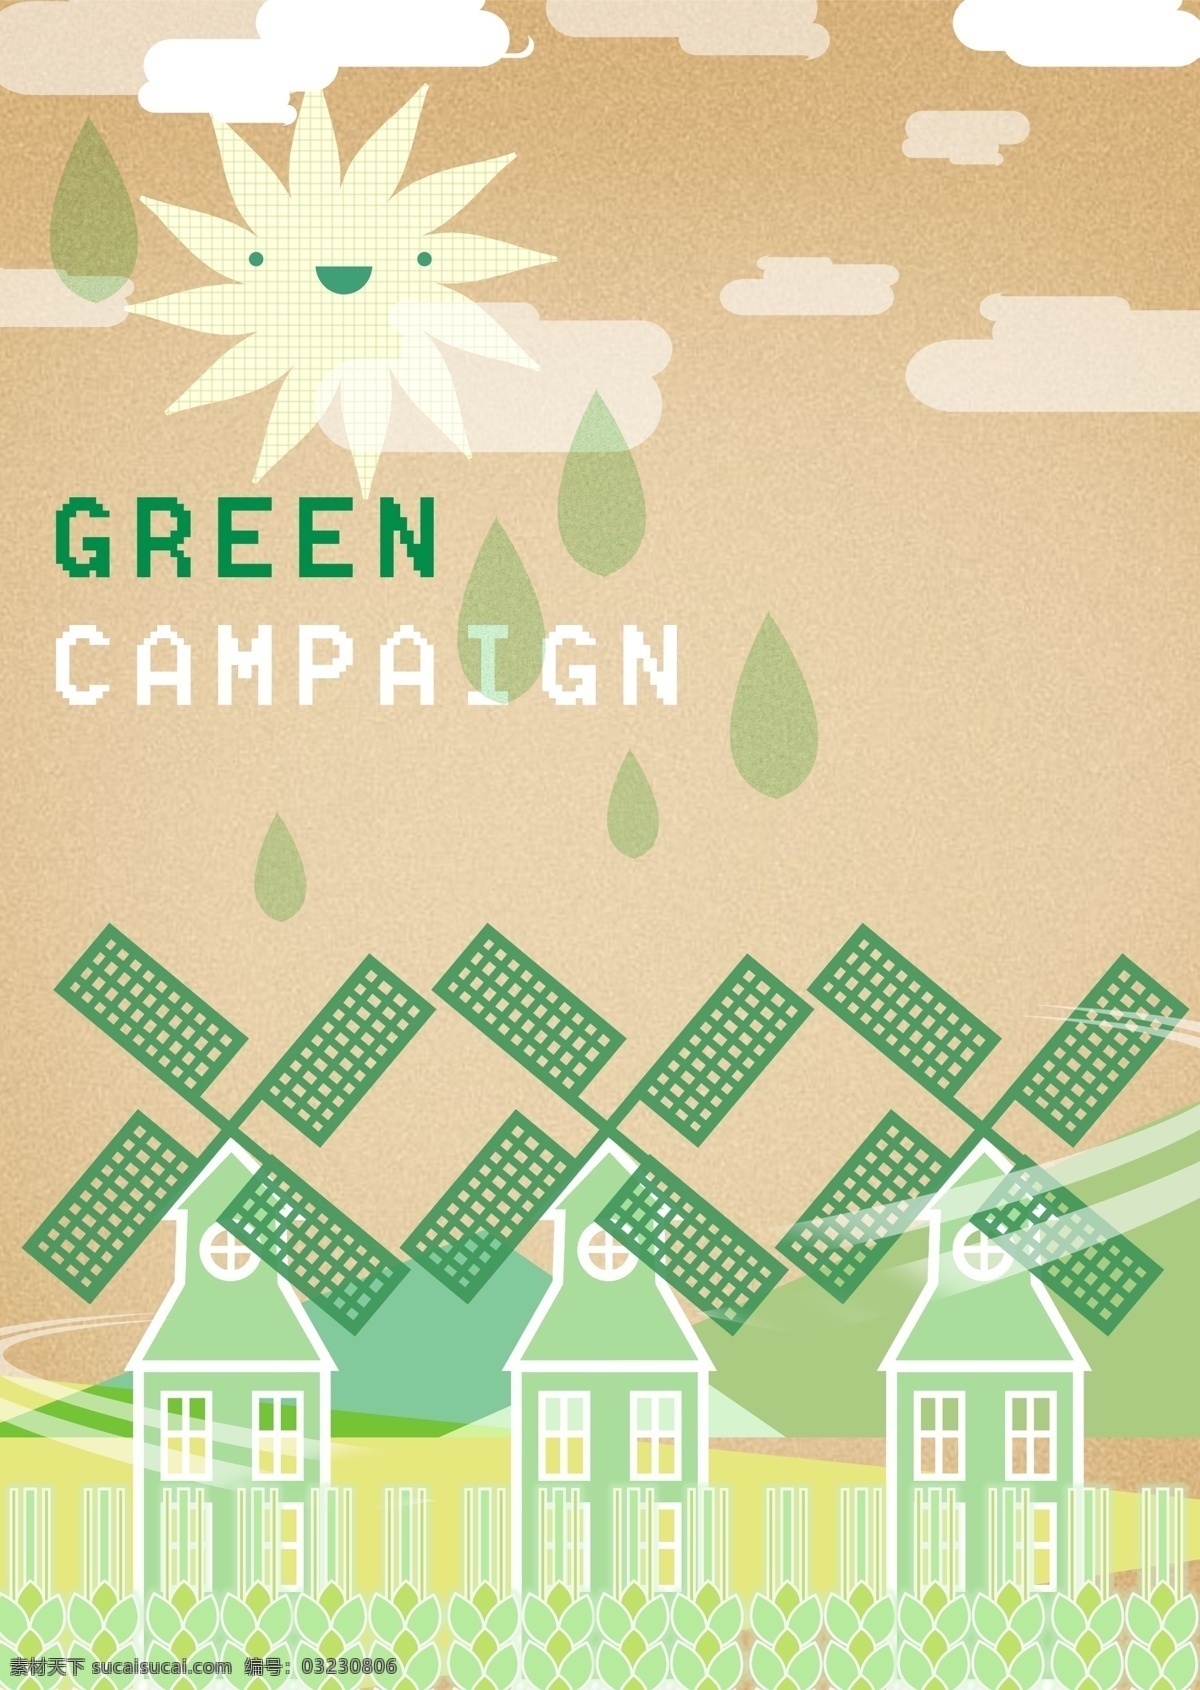 风力 发电 海报 绿色环保 环境保护 环保 节能 绿色能源 生态保护 生态平衡 风力发电 广告设计模板 psd素材 黄色